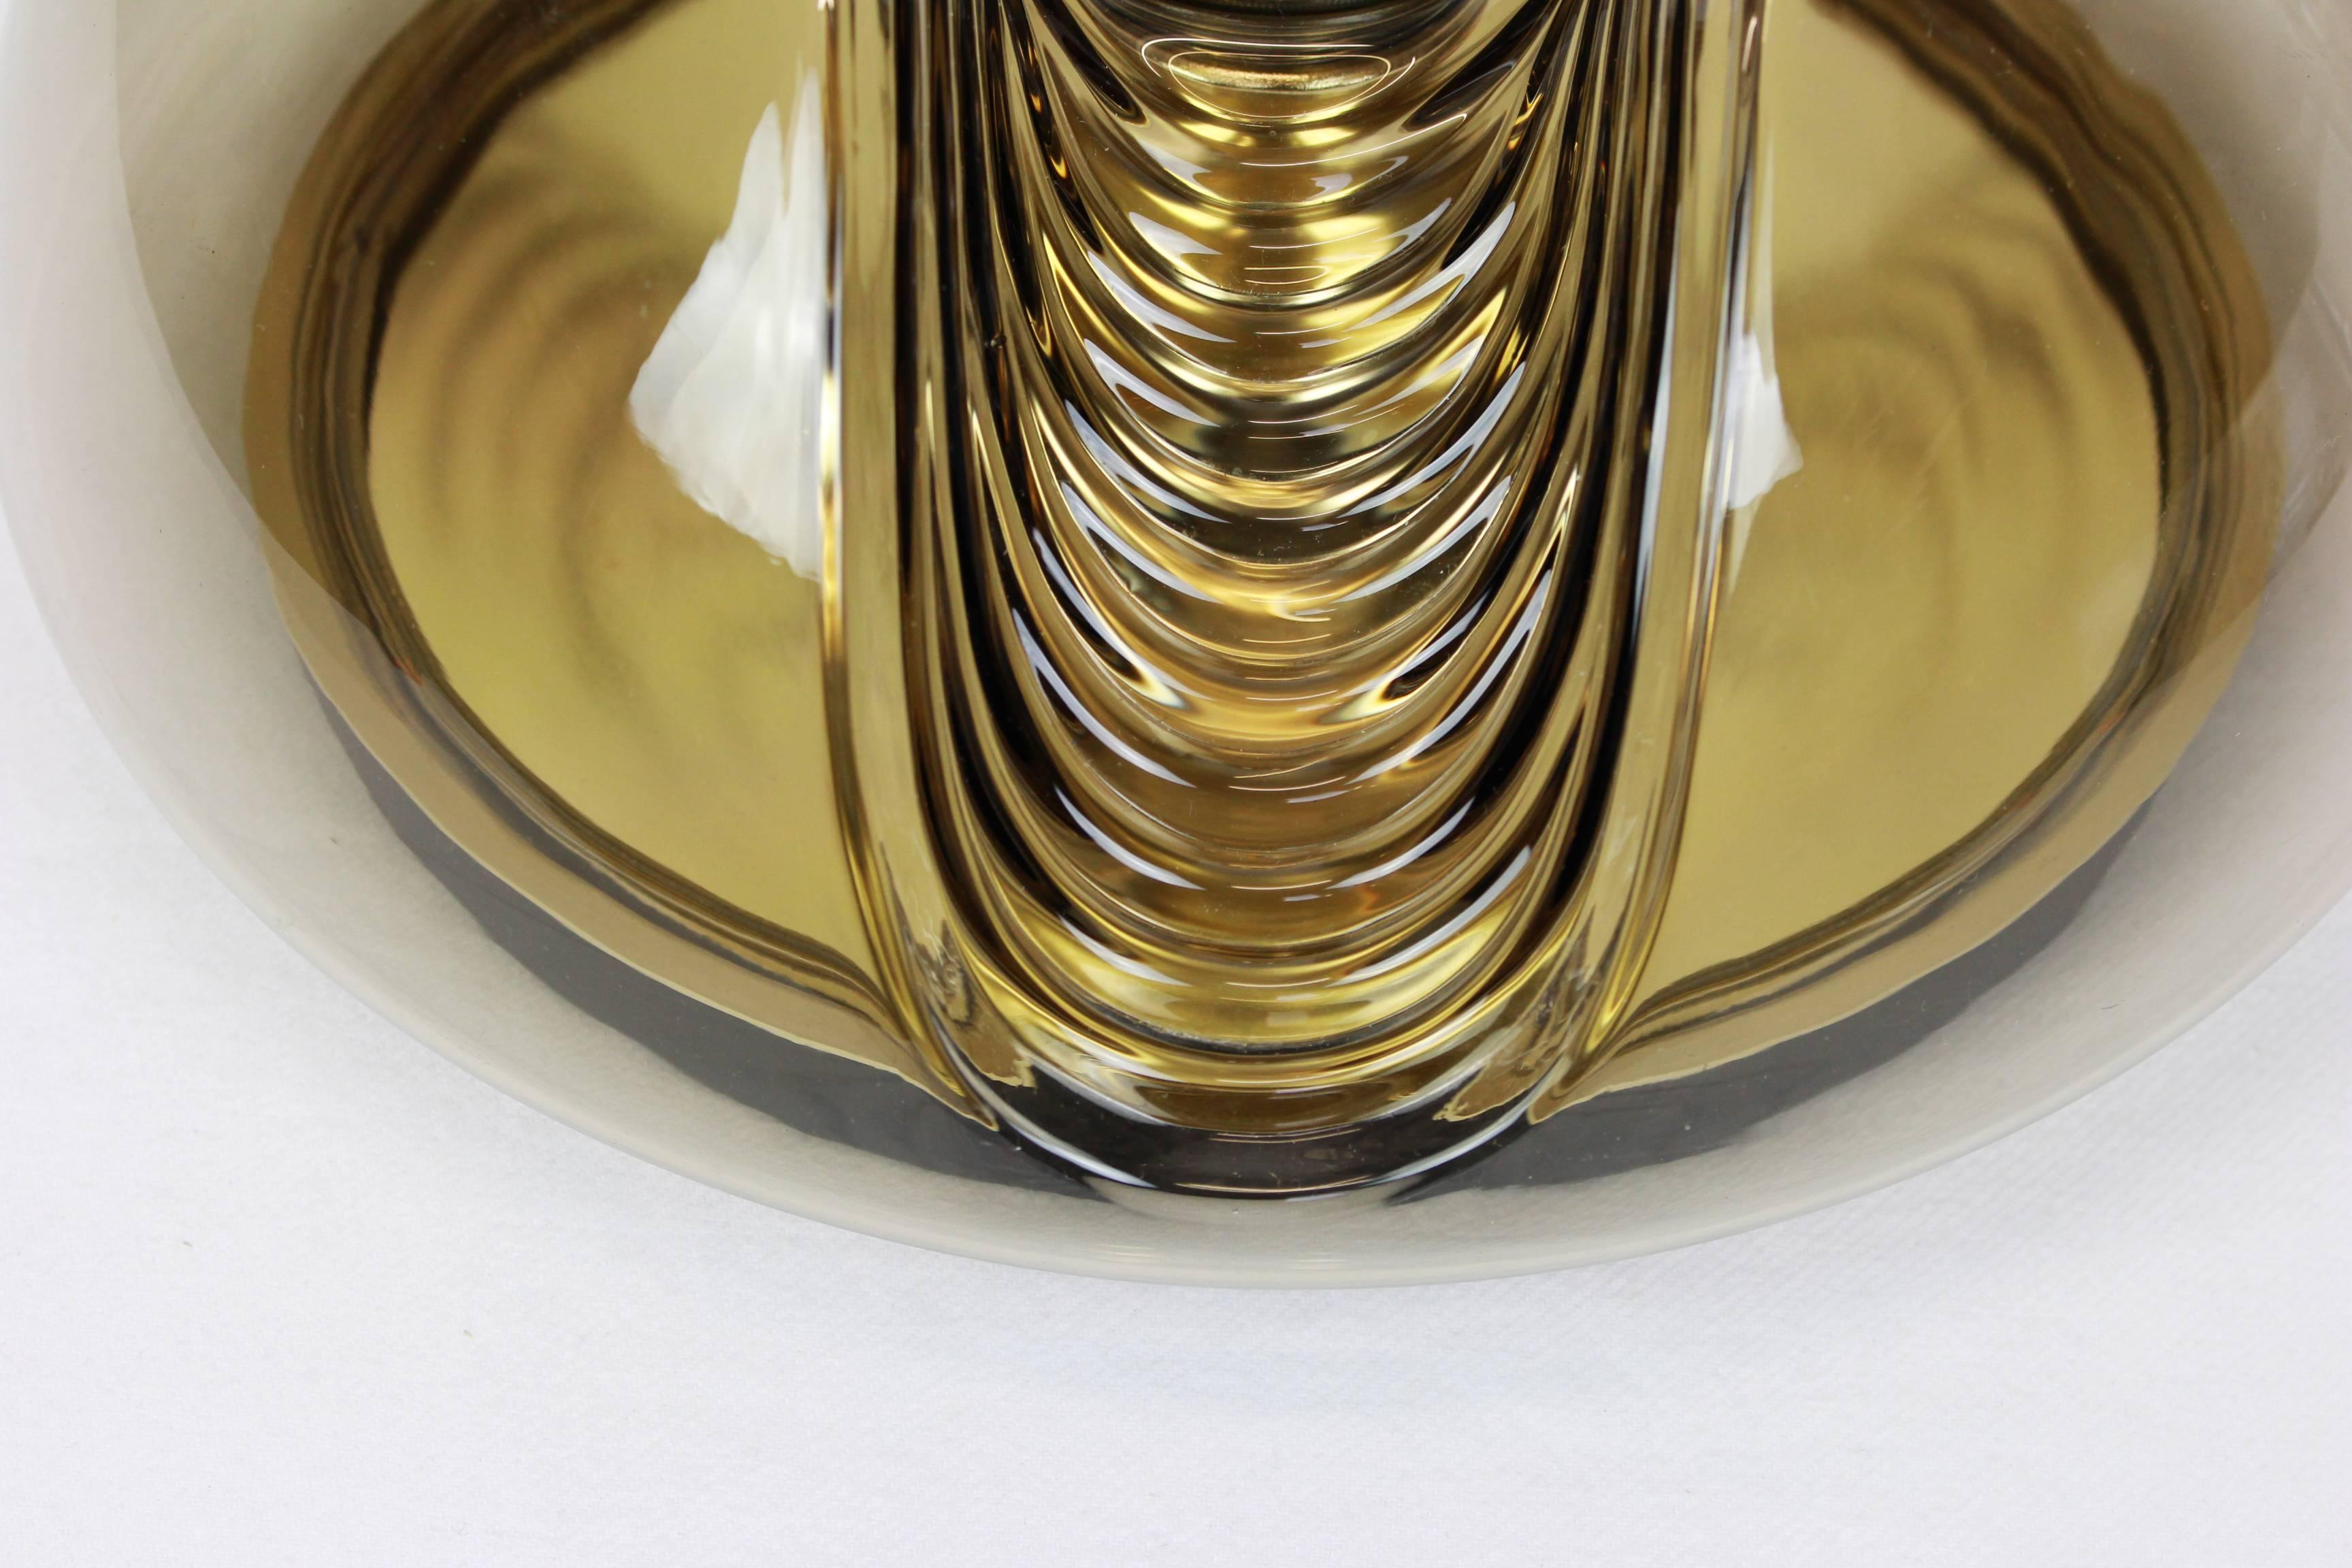 Eine spezielle runde biomorphe Wandleuchte aus Rauchglas, entworfen von Koch & Lowy für Peill & Putzler, hergestellt in Deutschland, ca. 1970er Jahre.

Hochwertig und in sehr gutem Zustand. Gereinigt, gut verkabelt und einsatzbereit. 

Jede